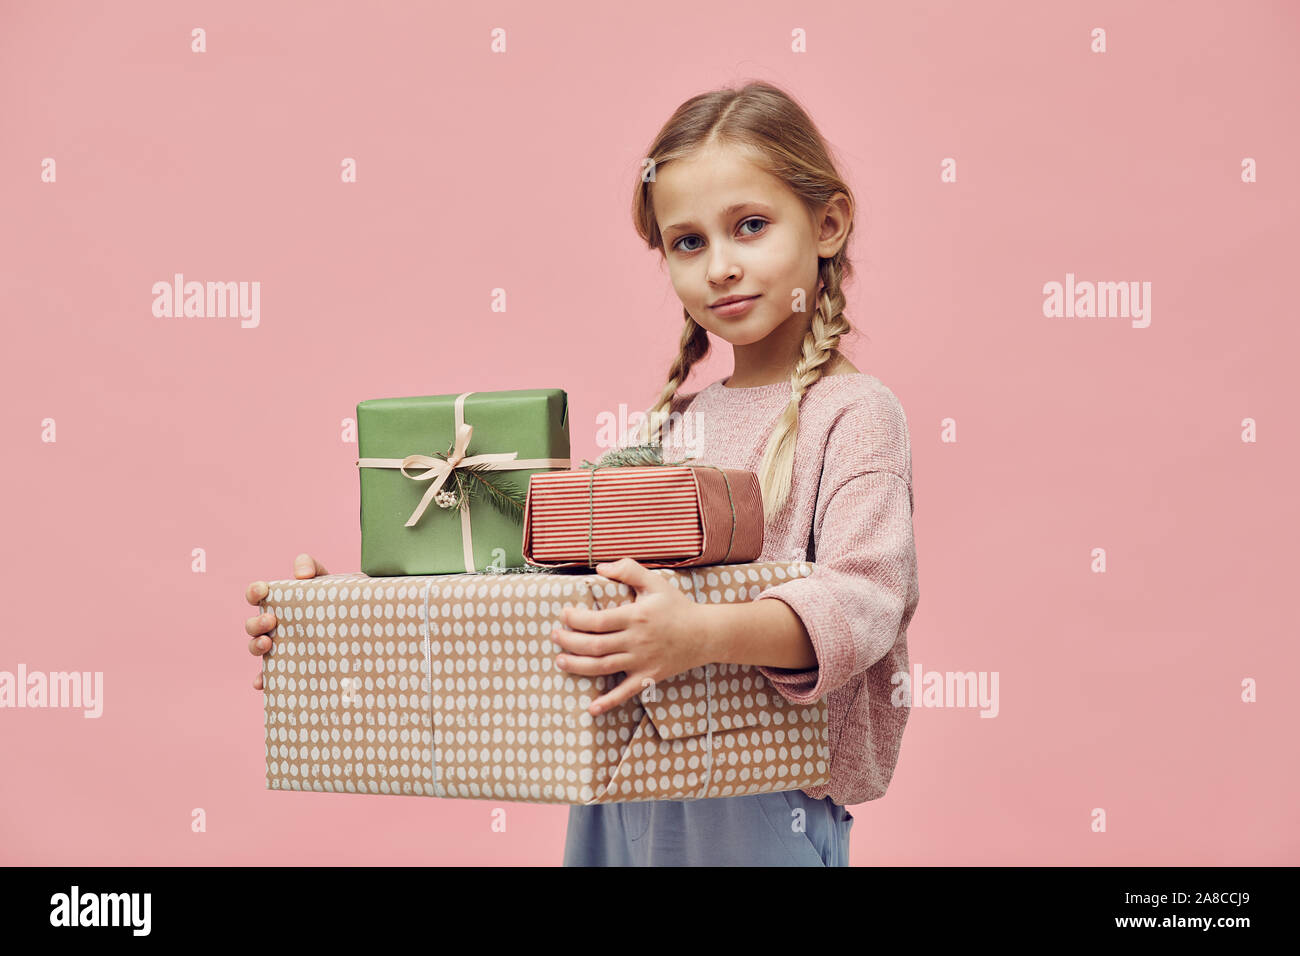 Portrait de petite fille aux cheveux blonds holding cadeaux enveloppés de lui donner pour son anniversaire et à la caméra à plus de fond rose Banque D'Images